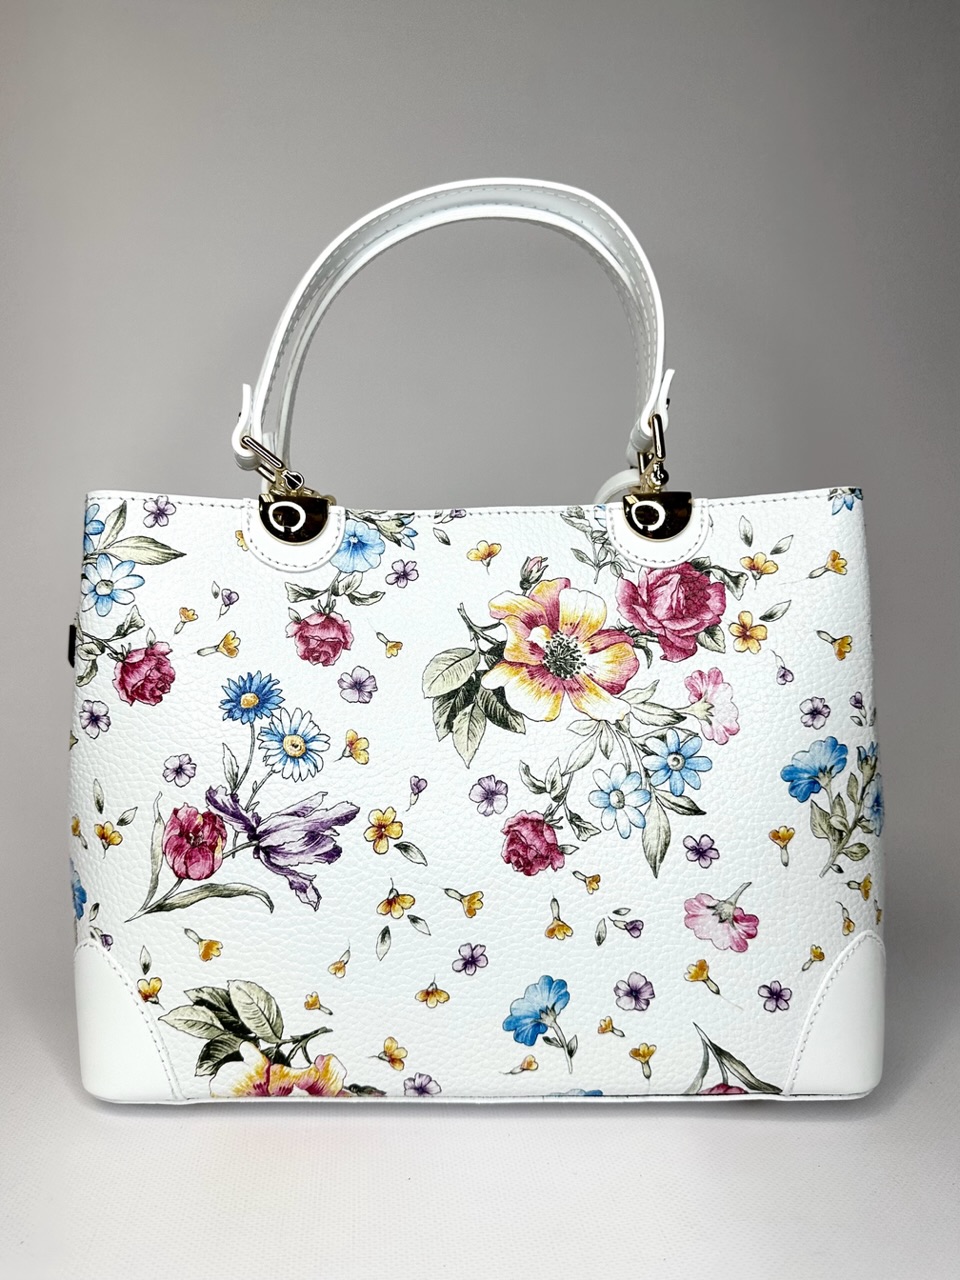 Белоснежная женская деловая сумка формата а4 нежный цветочный принт Vera Pelle из Италии для MARIE